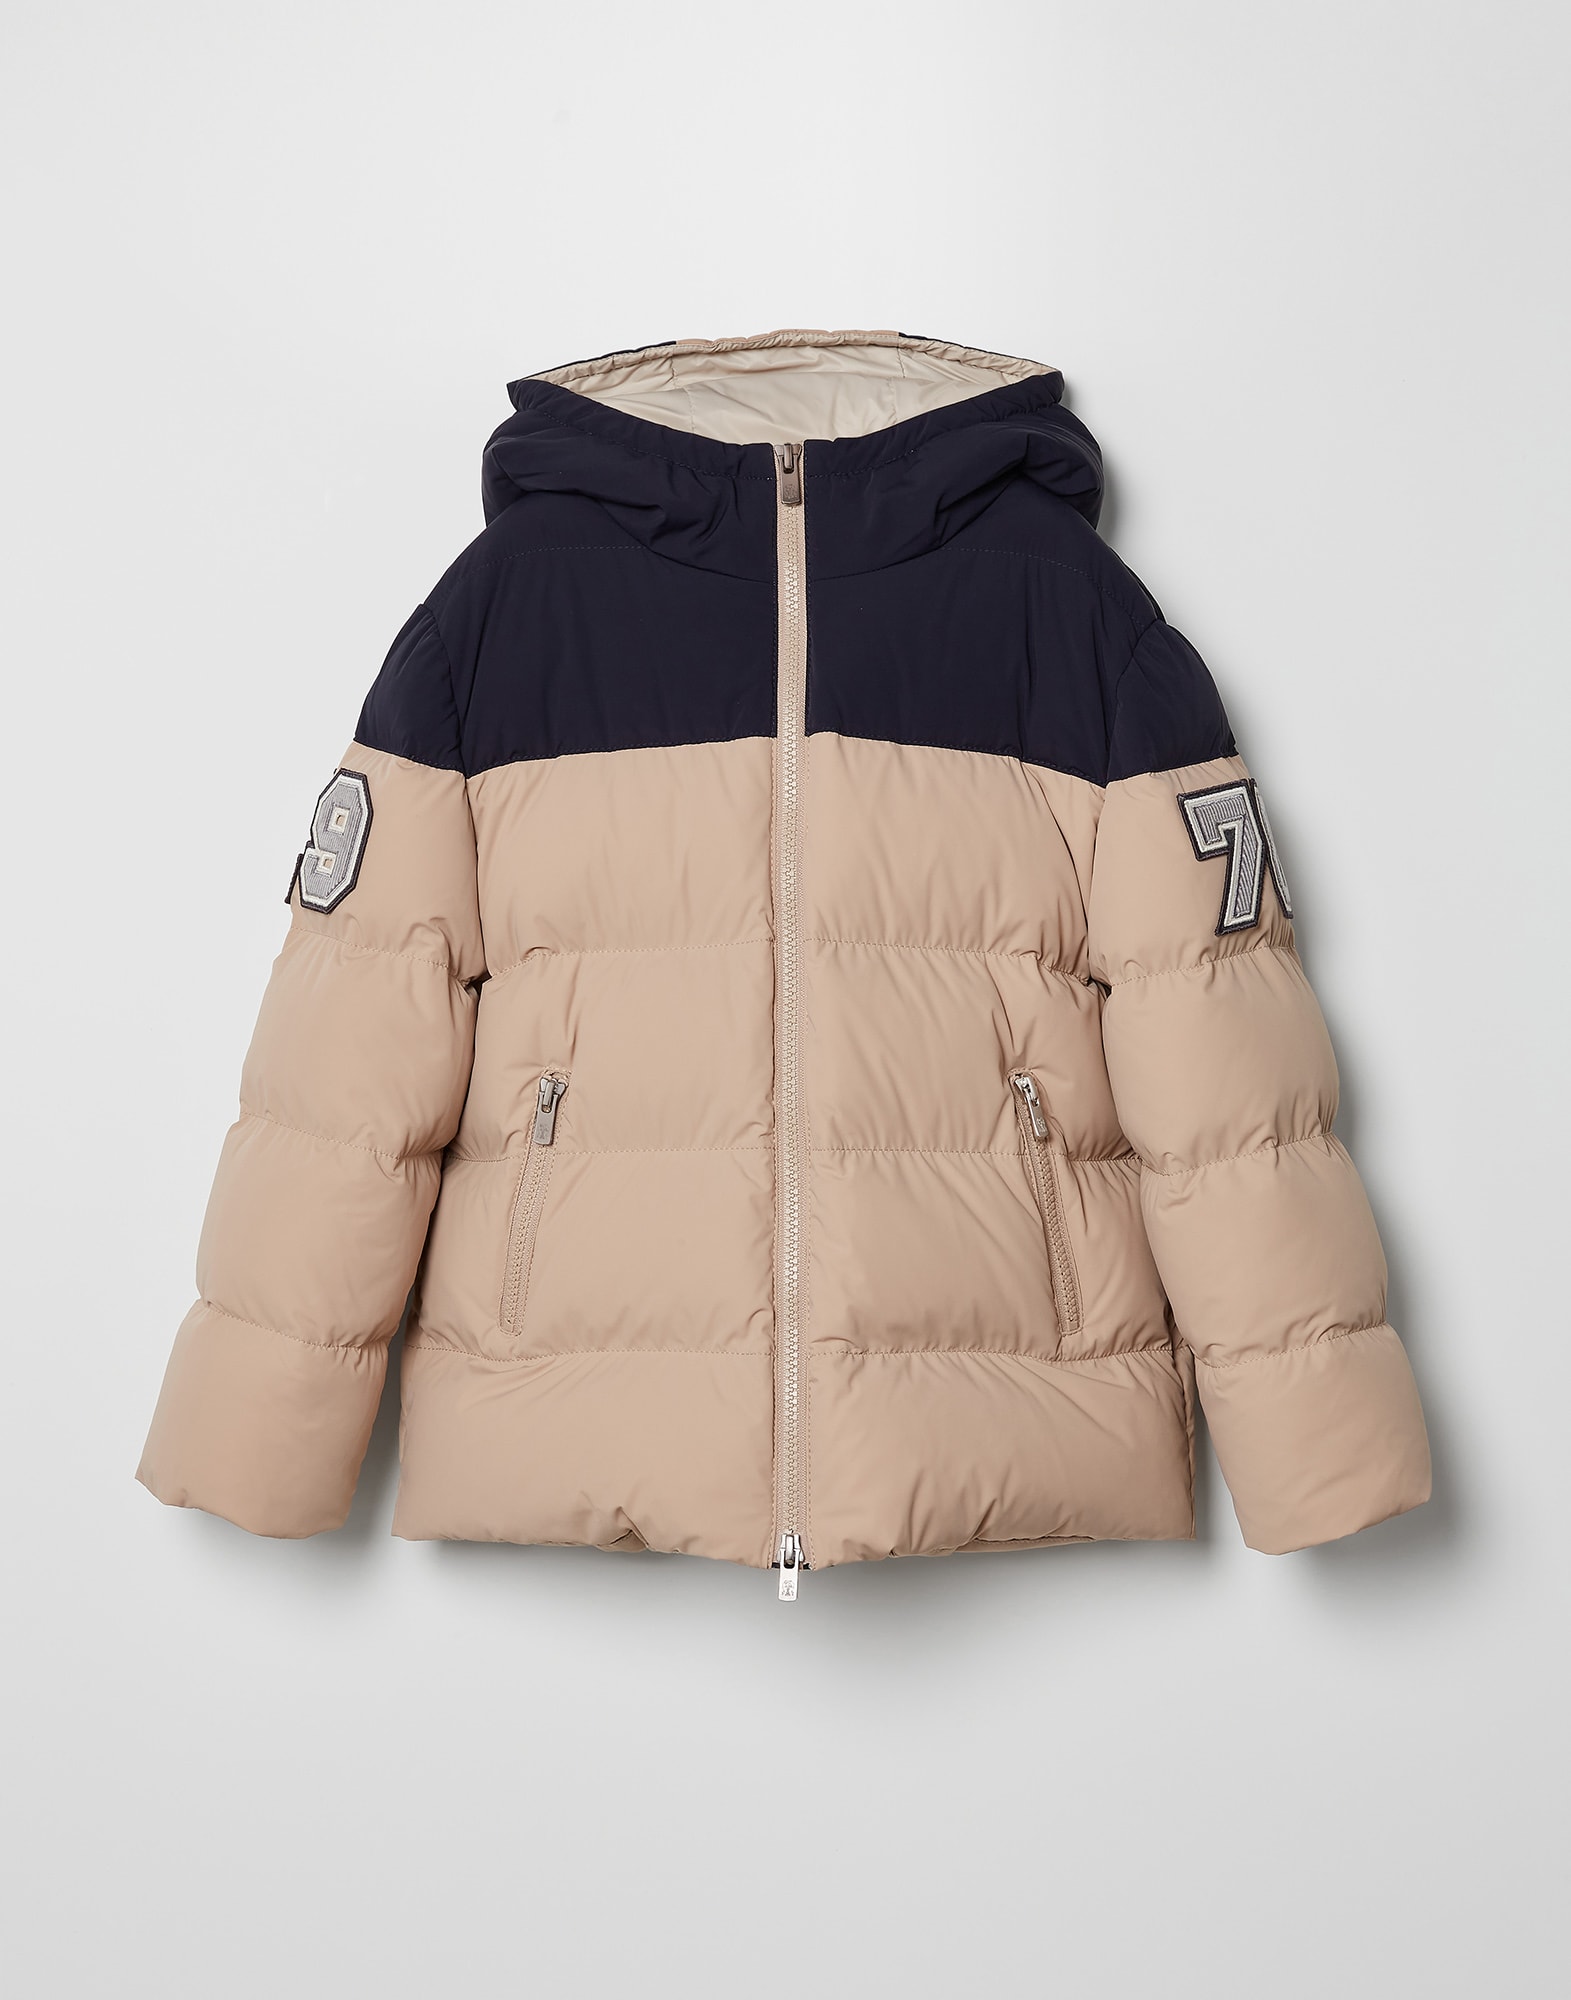 Ropa de abrigo para niño: chaquetas y parkas